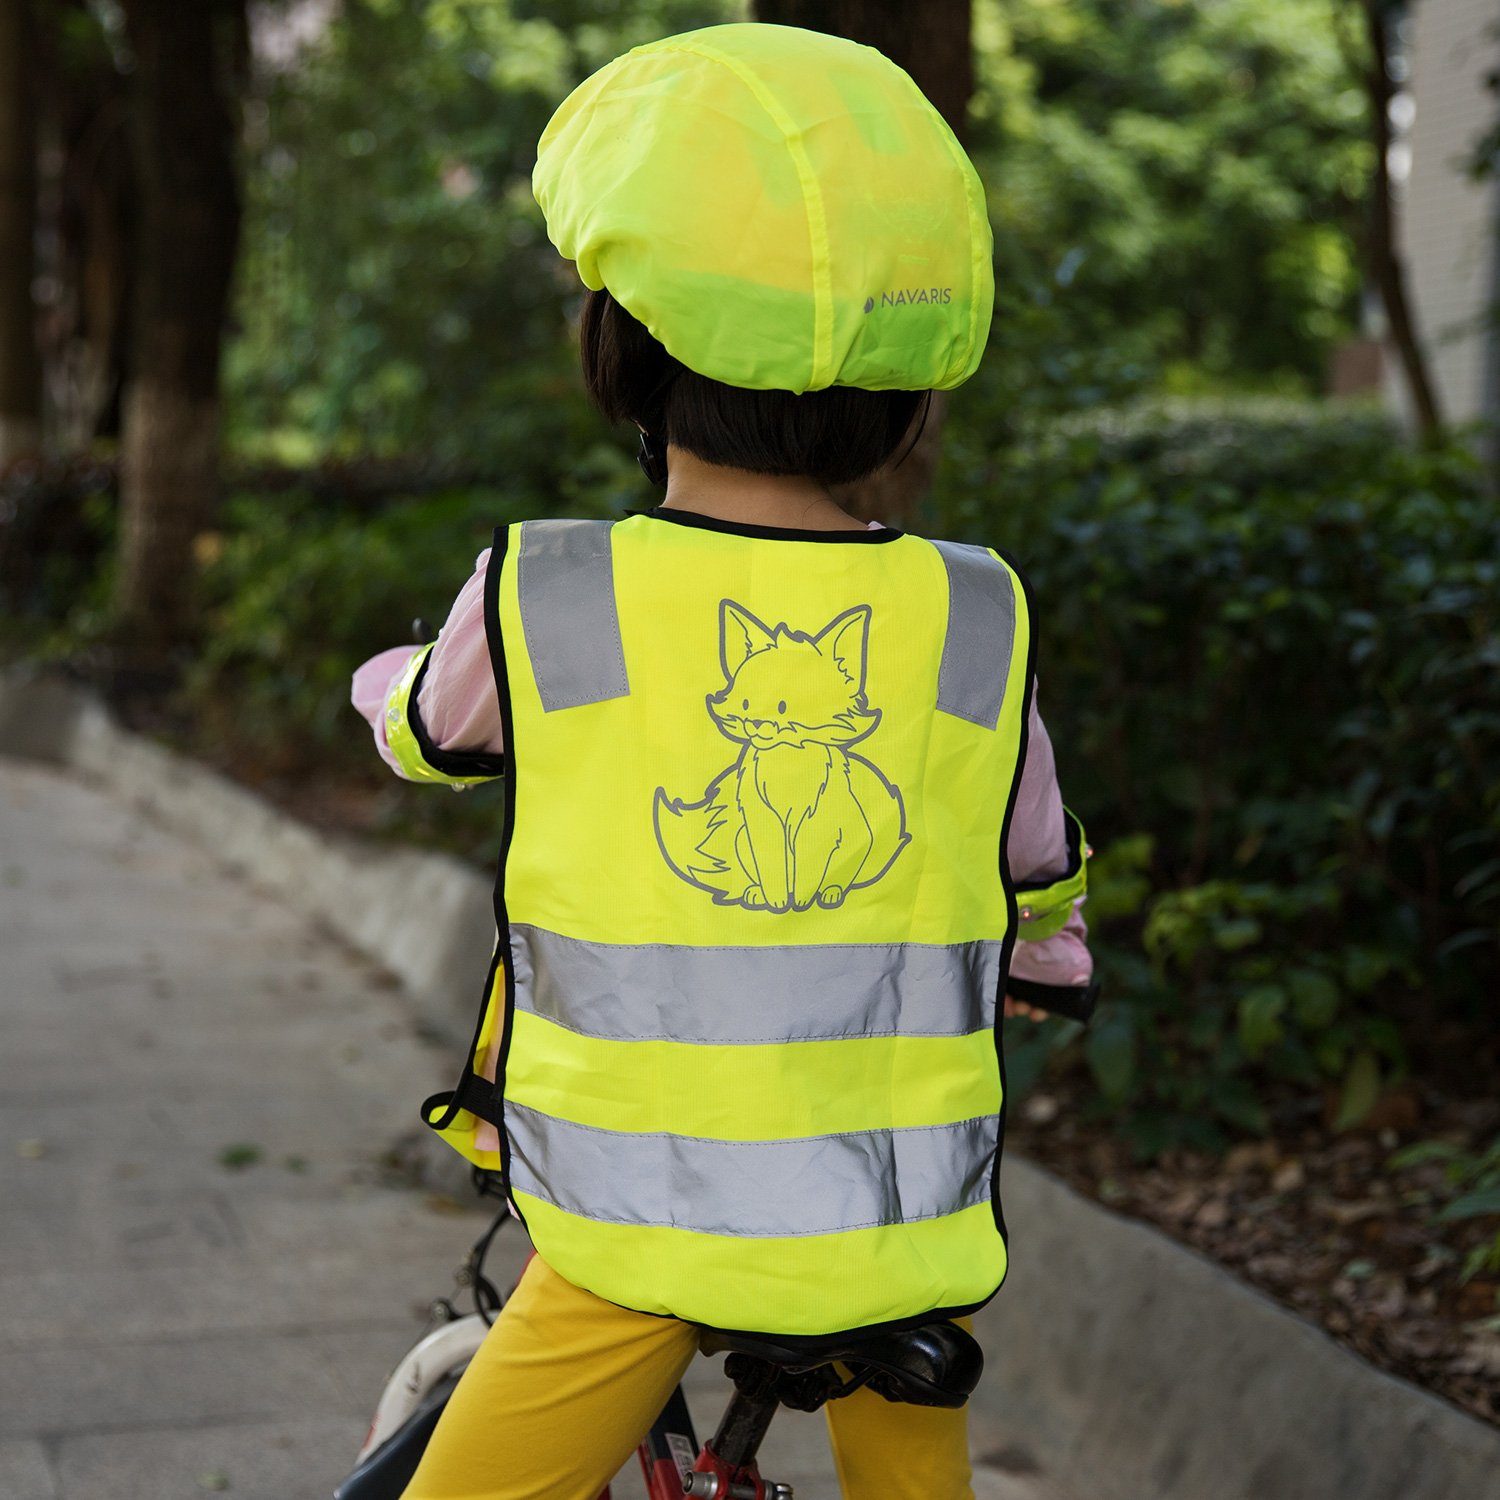 Navaris Warnweste Sicherheits Set 7-teilig für Kinder - Warnweste für  Straßenverkehr - Leuchtstreifen Leuchtband - Weste Sicherheitsweste  reflektierend online kaufen | OTTO